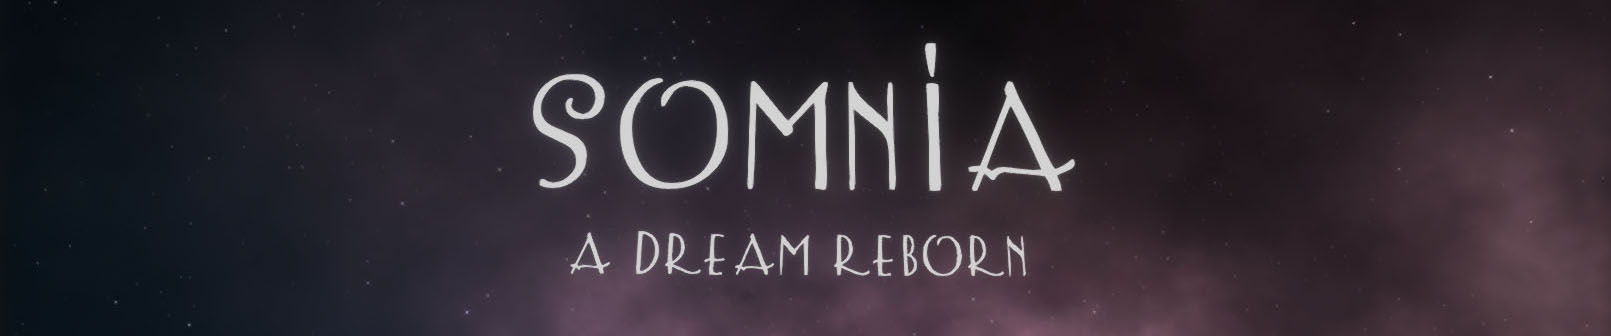 SOMNIA - A Dream Reborn